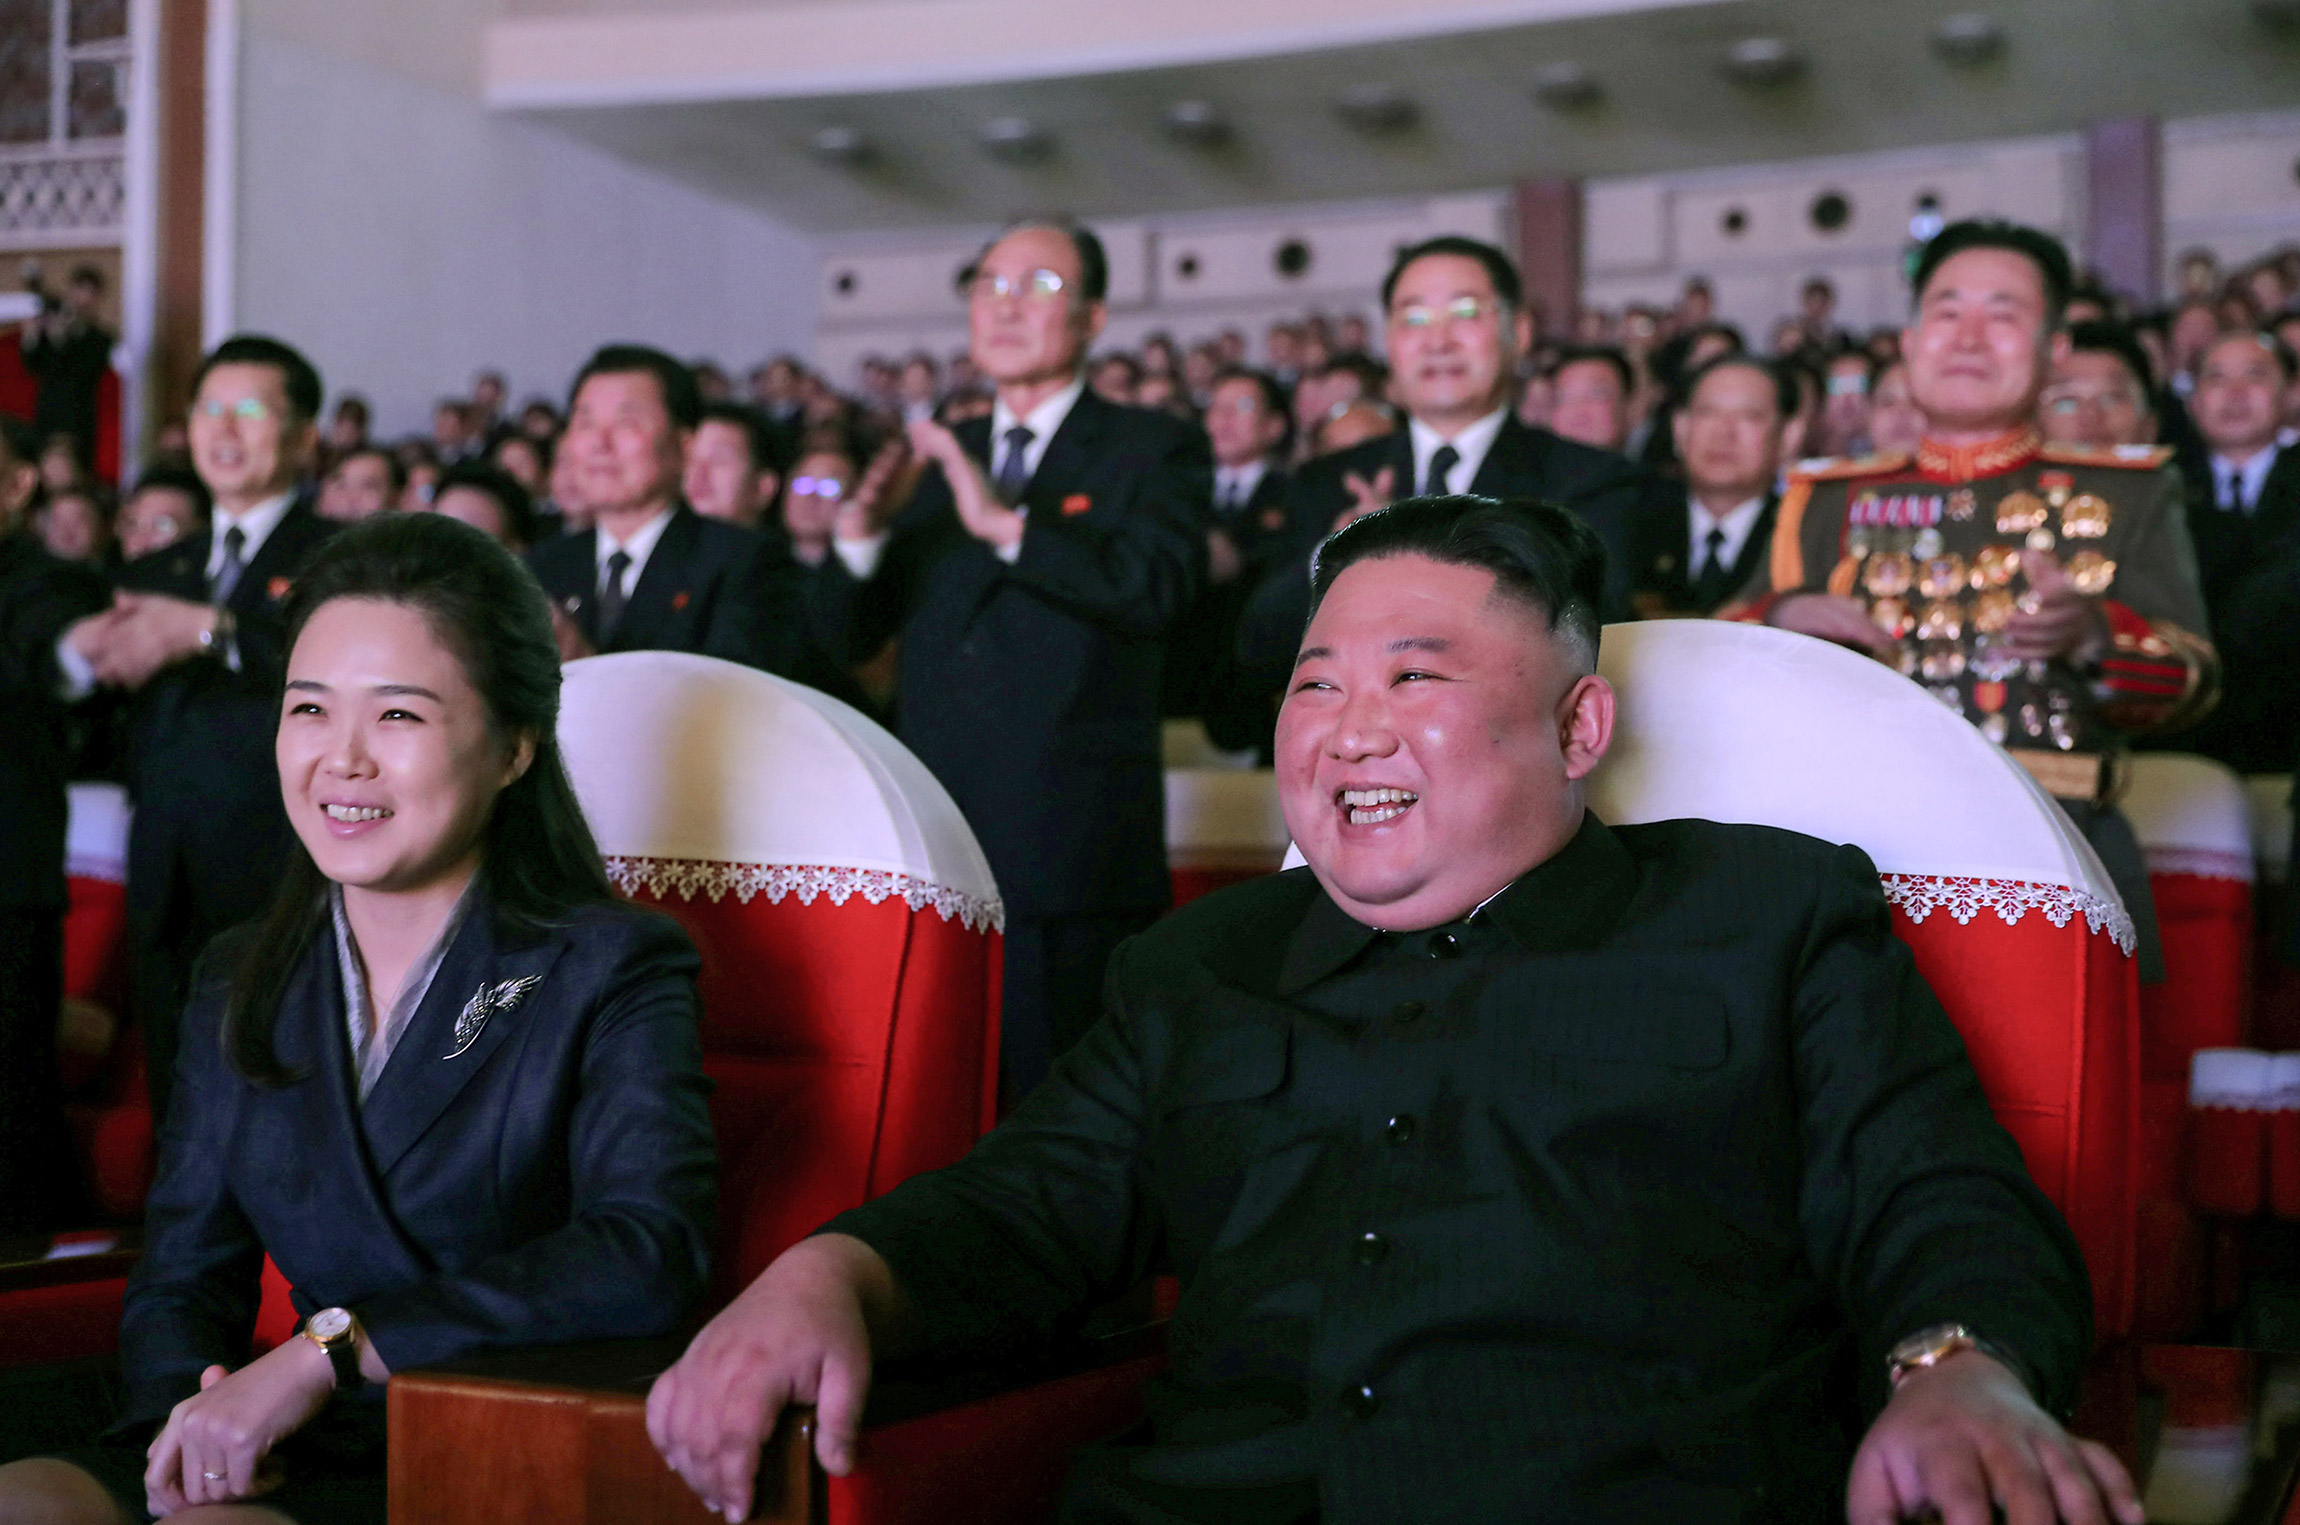 Лидер КНДР Ким Чем Ын с женой Ли Соль Чжу на представлении в честь Дня сияющей звезды&nbsp;&mdash; годовщины&nbsp;дня рождения Ким Чен Ира.&nbsp;17 февраля, Пхеньян